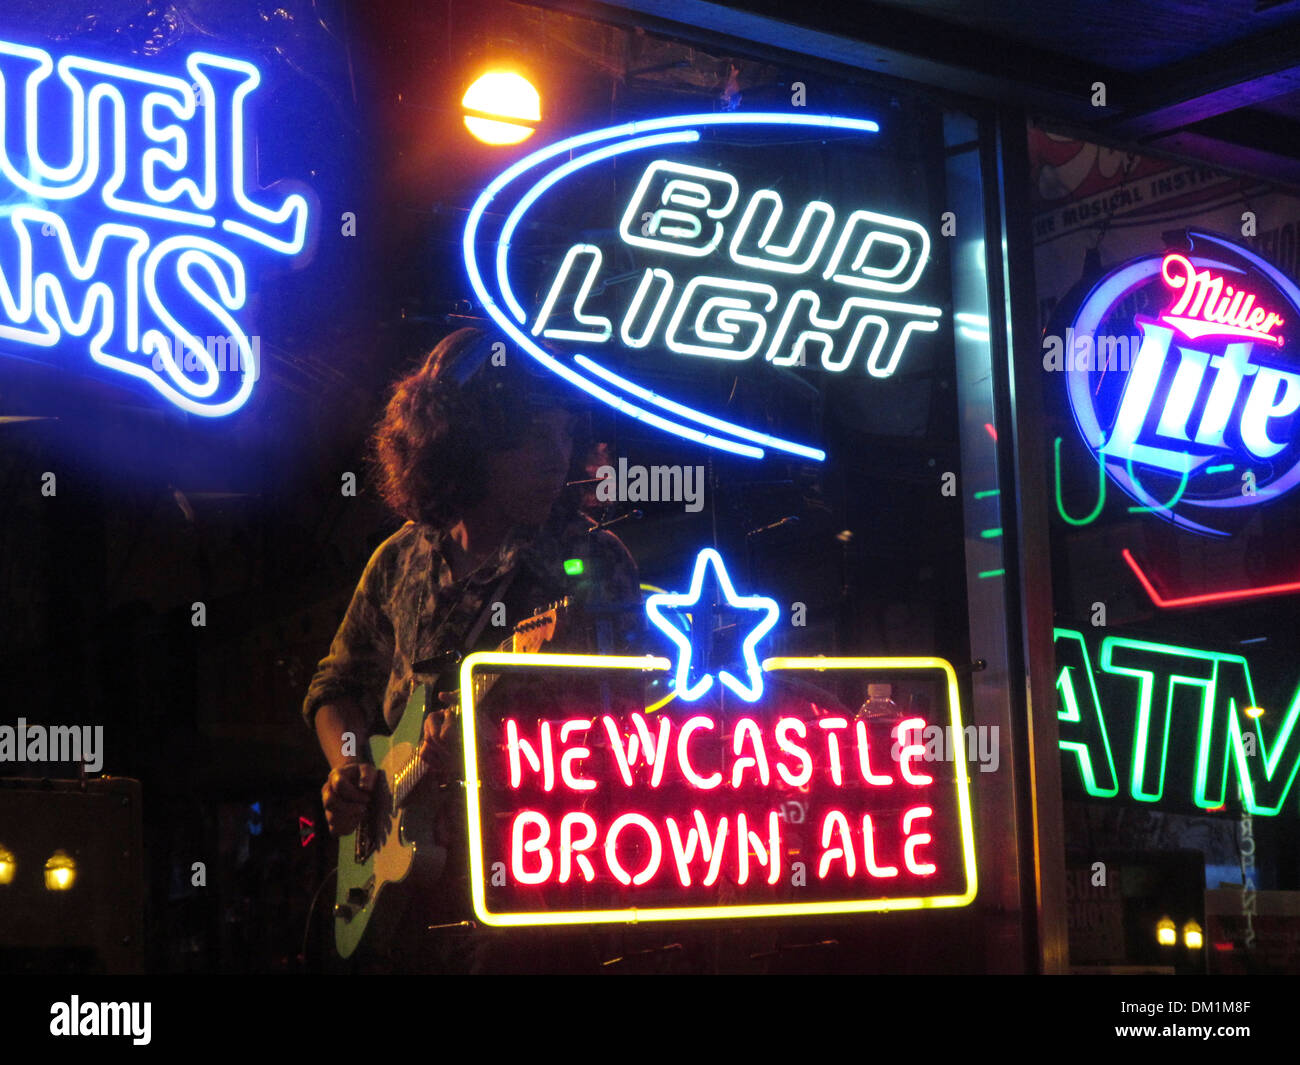 L'honky tonk bars et clubs du centre-ville de Broadway de Nashville, Tennessee Banque D'Images